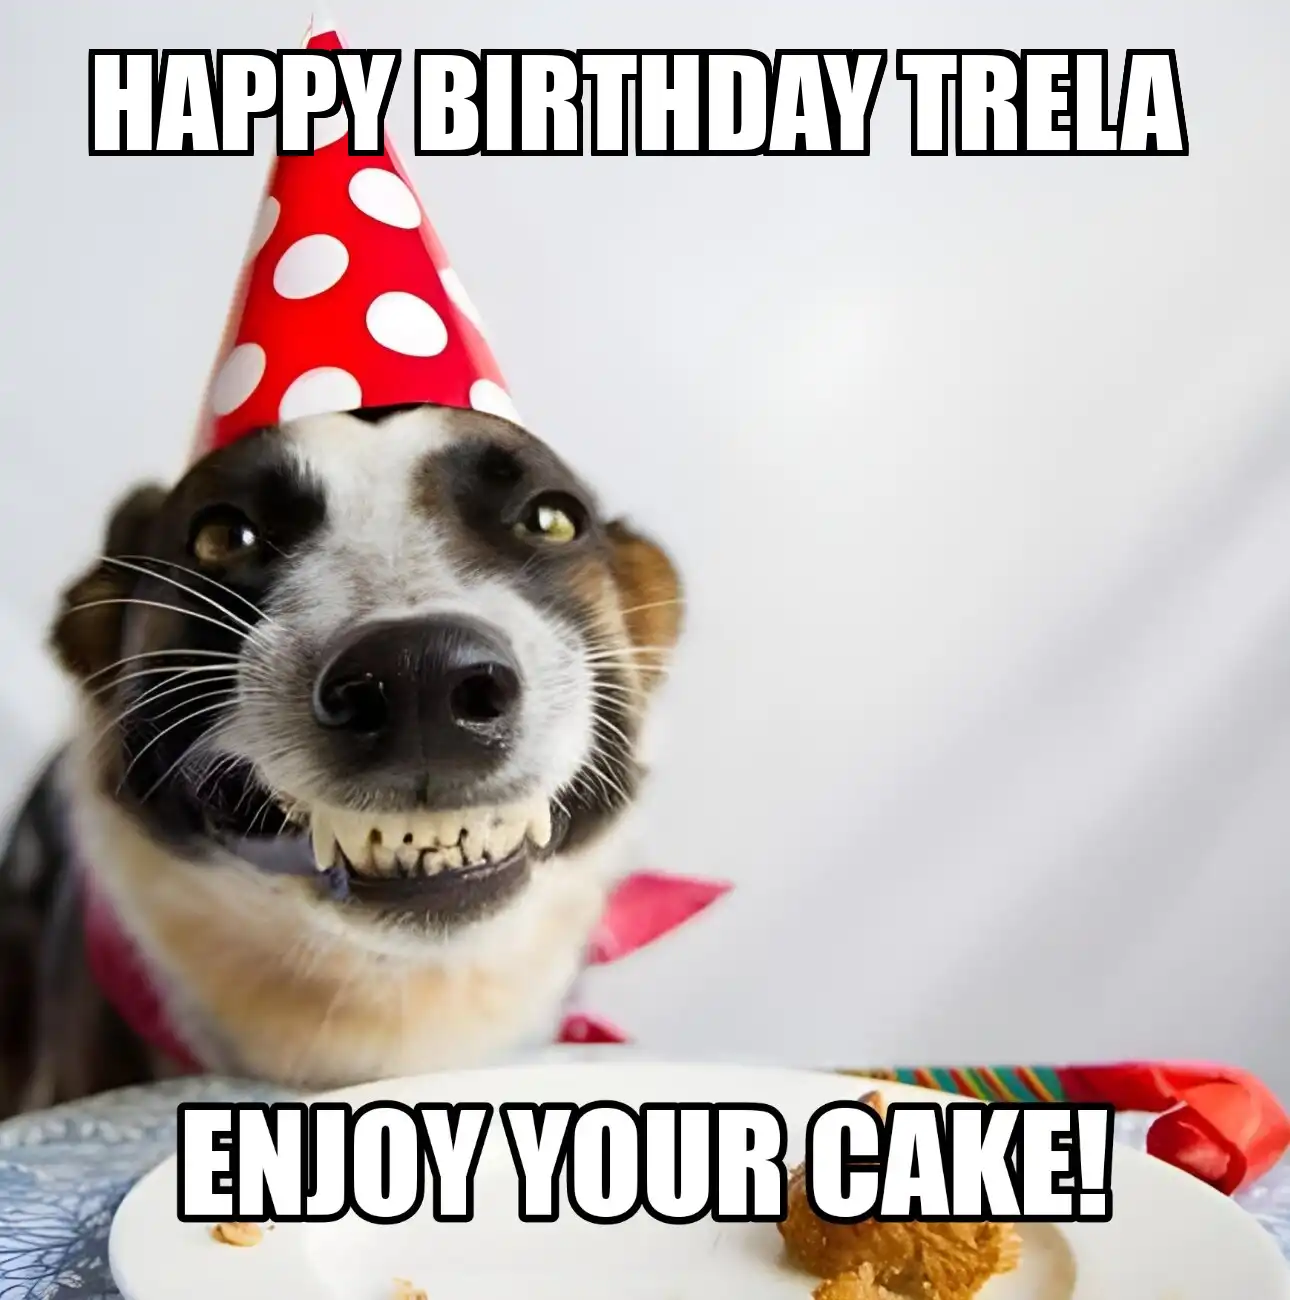 Happy Birthday Trela Enjoy Your Cake Dog Meme